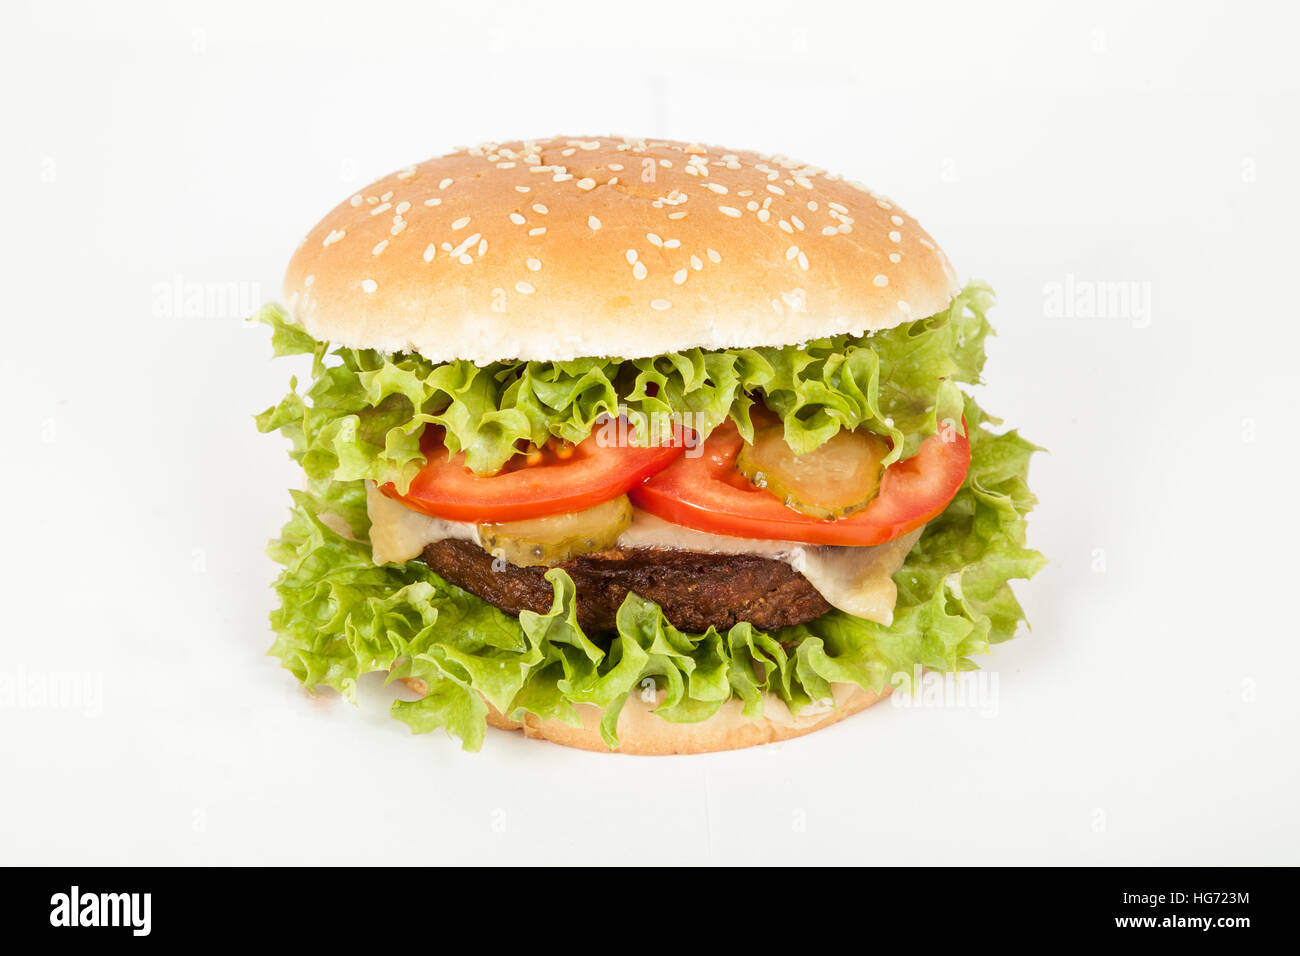 Burger végétarien sur blanc Banque D'Images